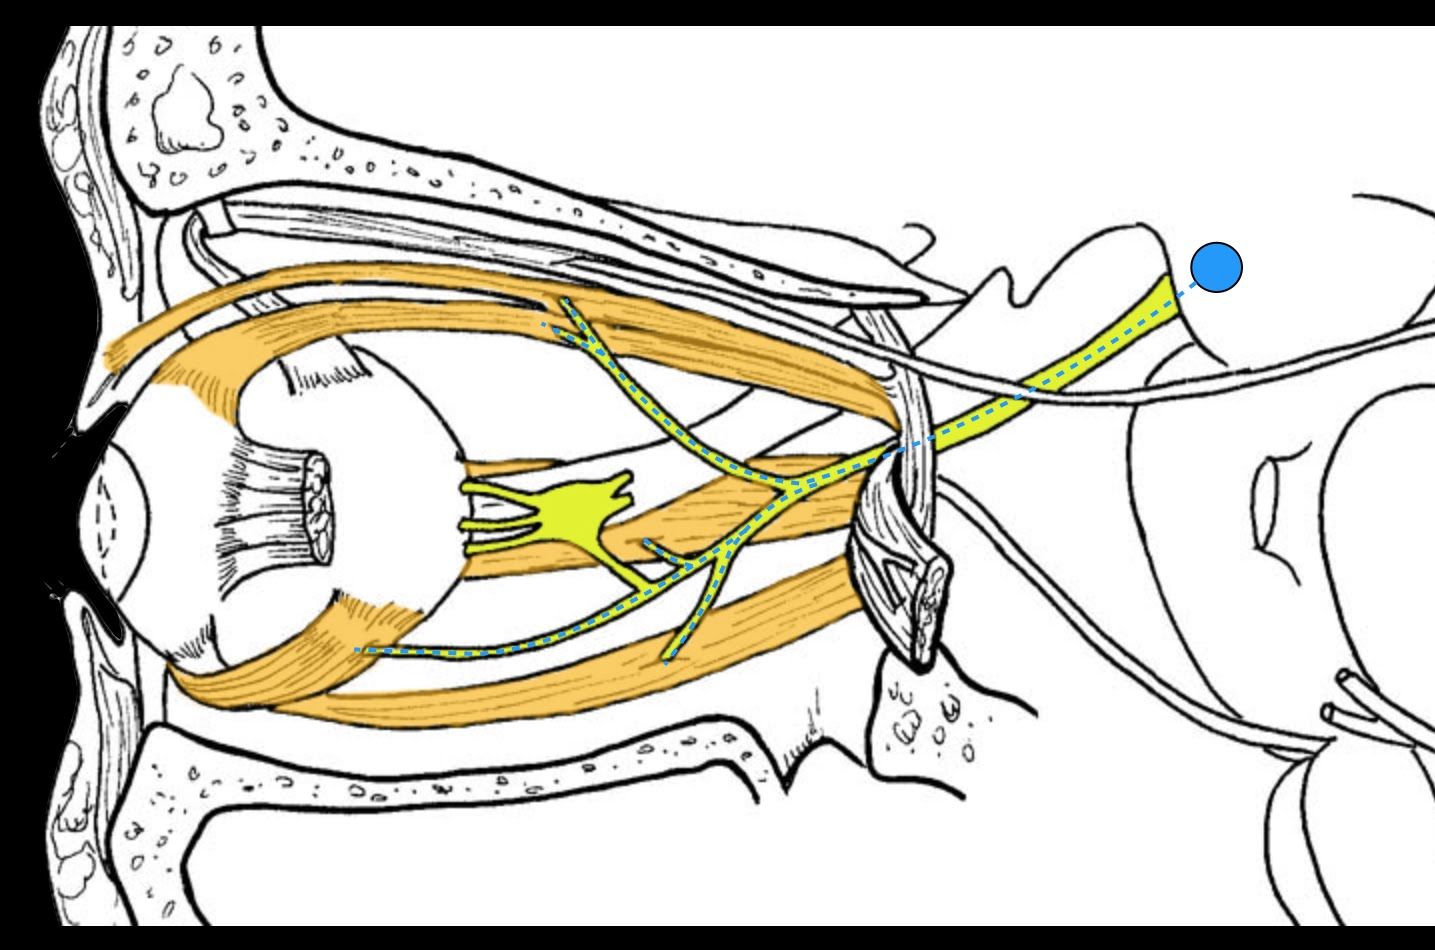 Нервы обонятельный зрительный. Отводящий нерв (n. ABDUCENS) иннервирует. Отводящий нерв (vi пара черепных нервов). Отводящий нерв схема. Отводящий нерв анатомия схема.